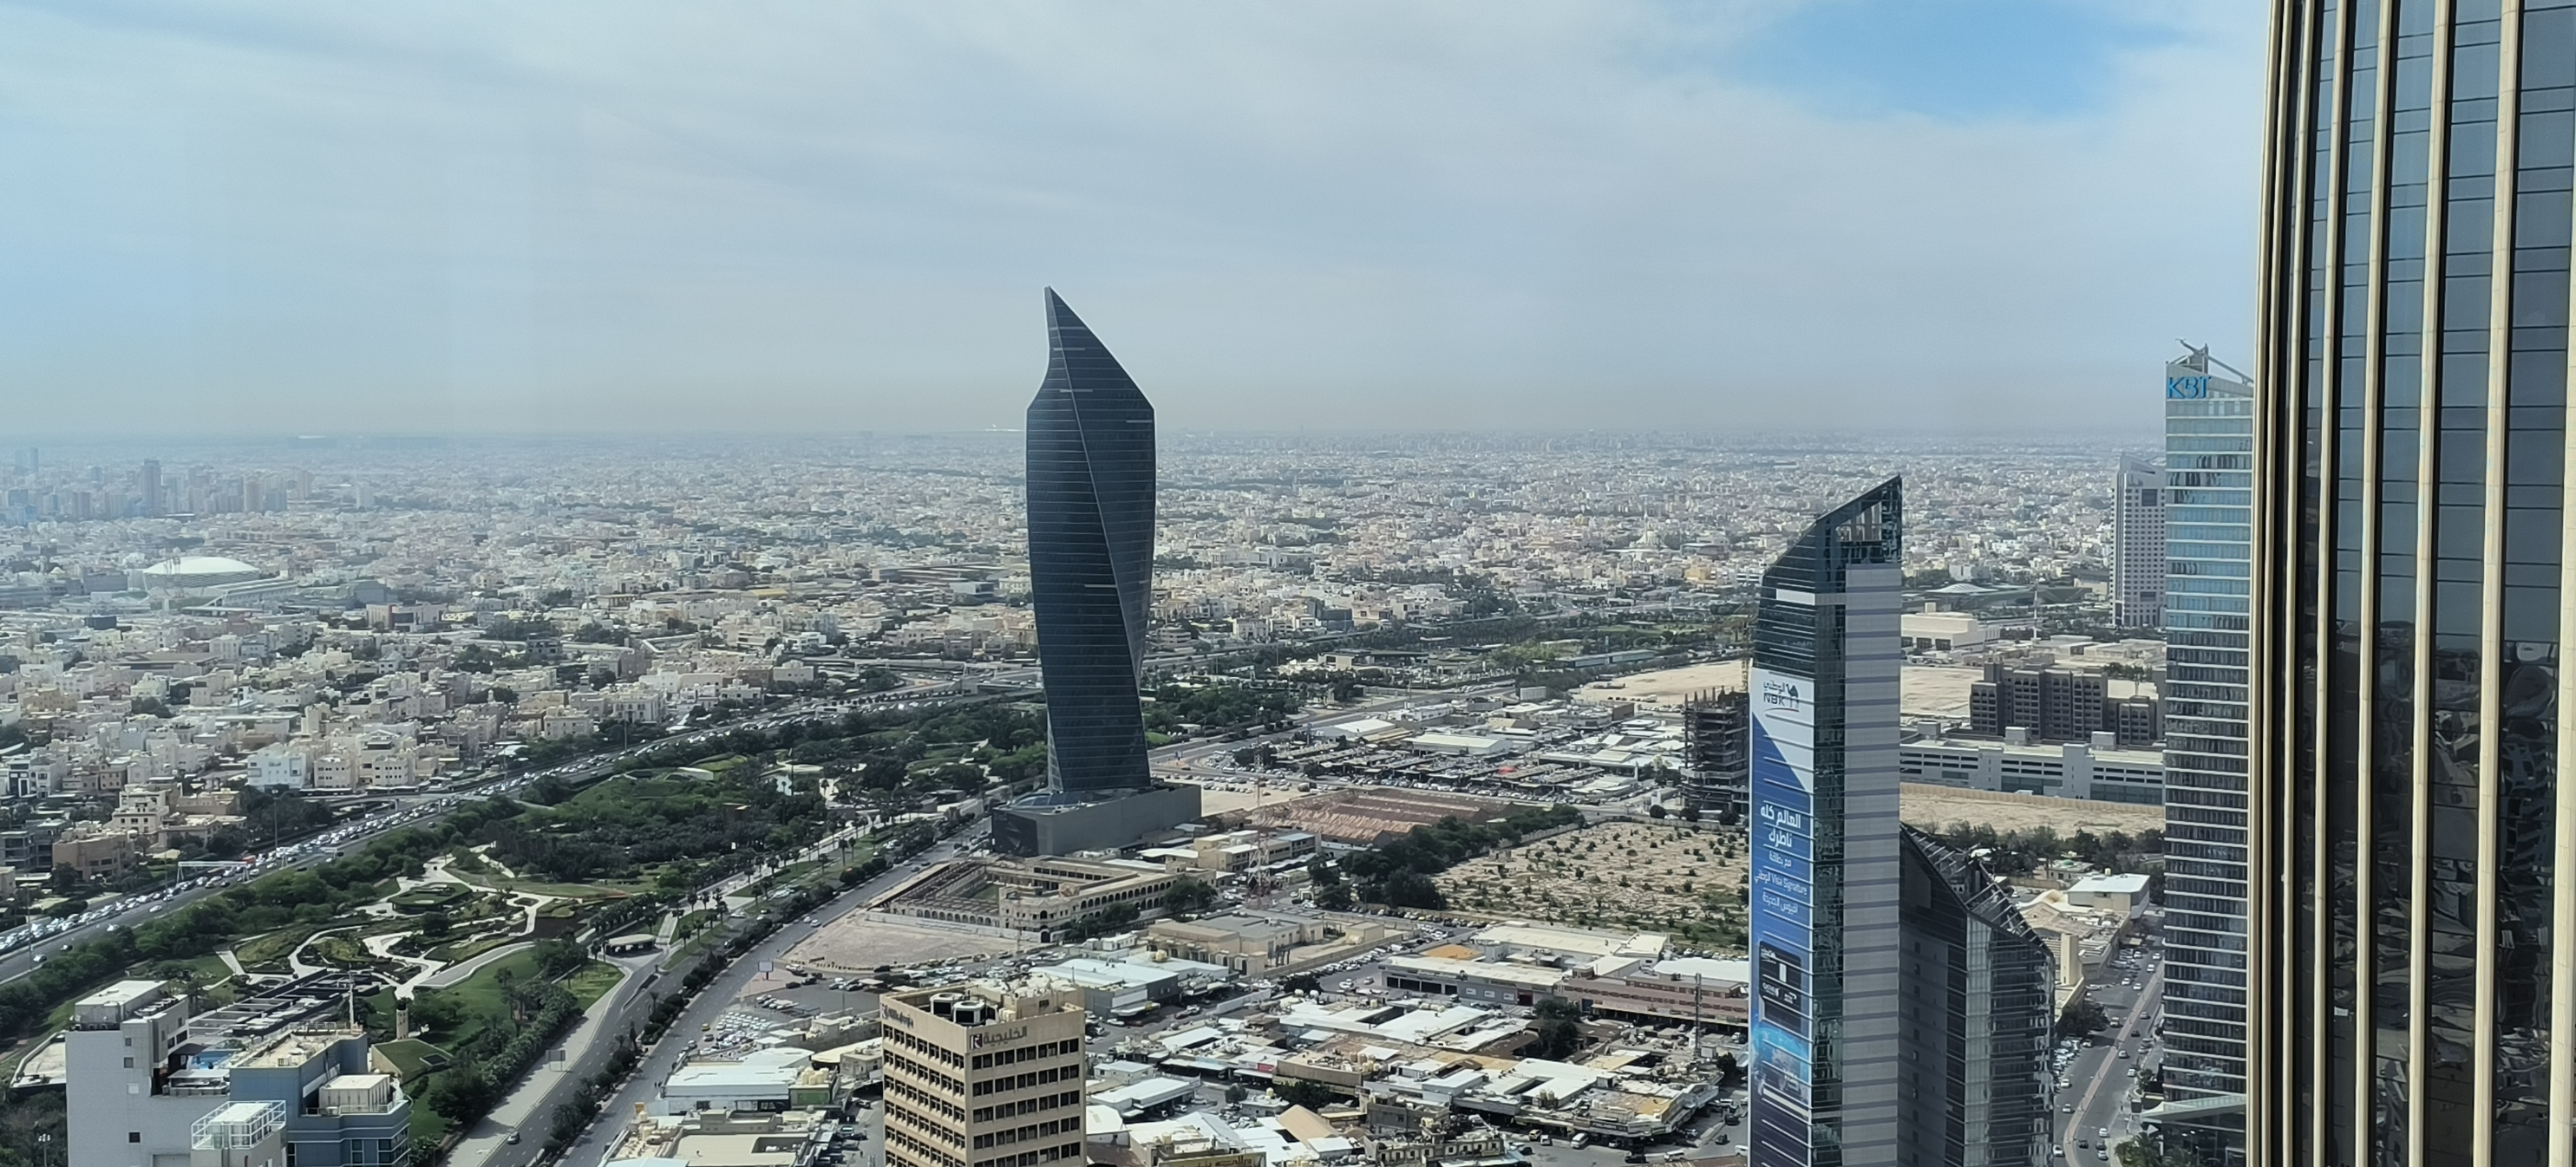 科威特城，是科威特国家的首都。首都处在科威特海湾内，科威特城集中了科威特国家的优质资源，各色建筑风格